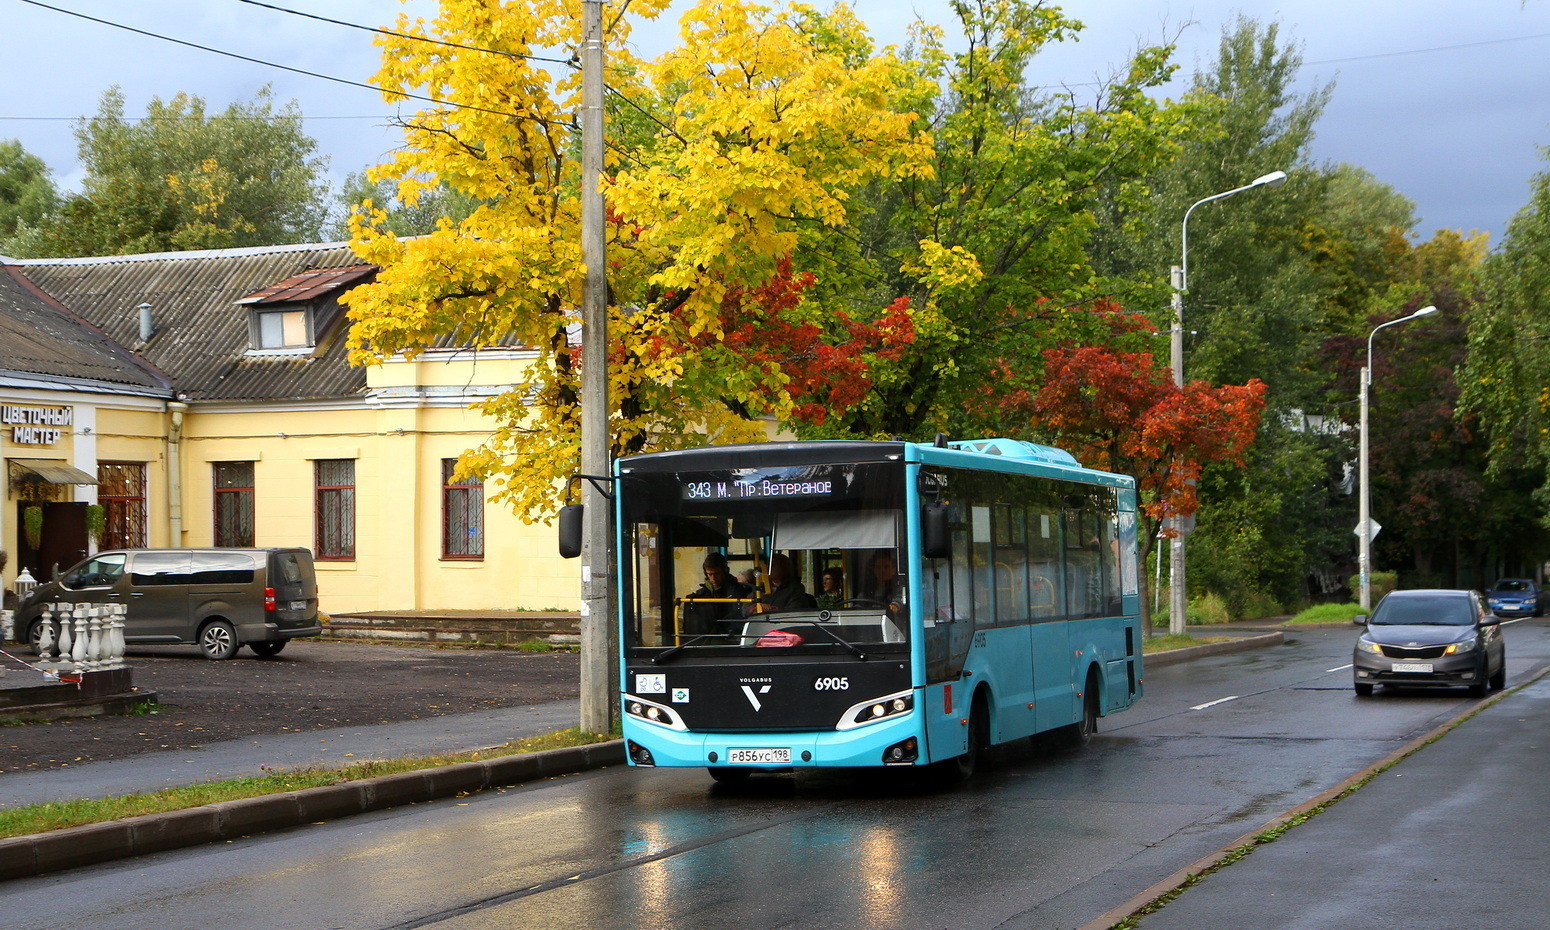 Sanktpēterburga, Volgabus-4298.G4 (LNG) № 6905